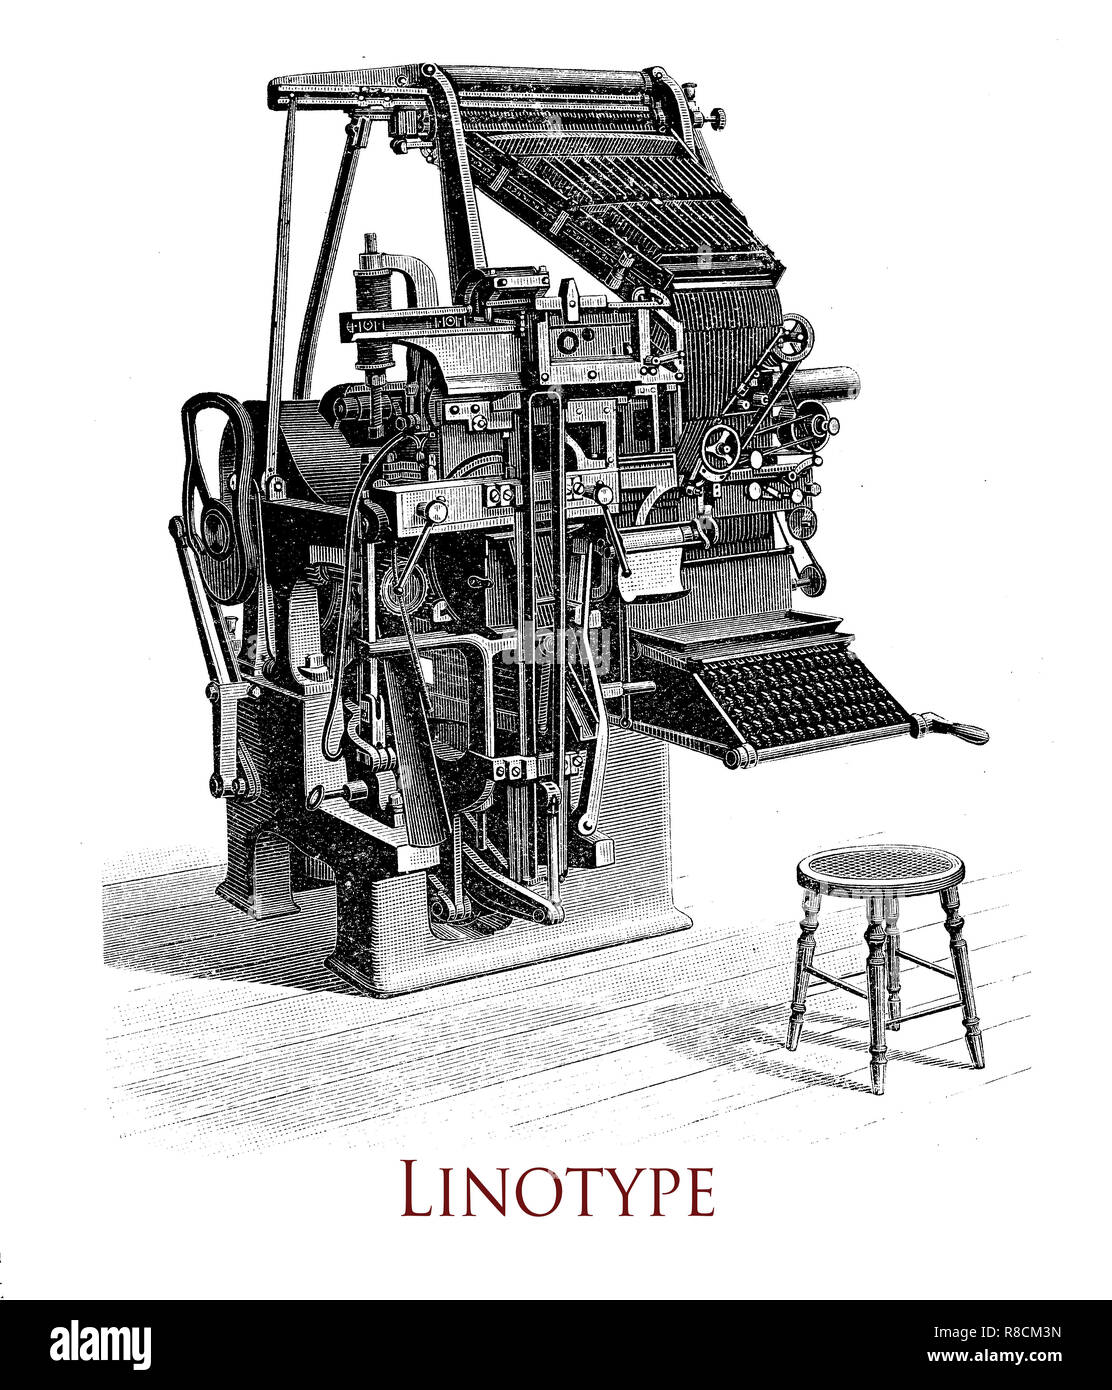 Vintage Gravur von Linotype Druckmaschine, produziert es eine ganze Zeile von Metall Typ auf einmal, gleichermaßen bezeichnenden Verbesserung gegenüber der vorherigen Industriestandard von manuellen letter-by-letter typesetting Stockfoto